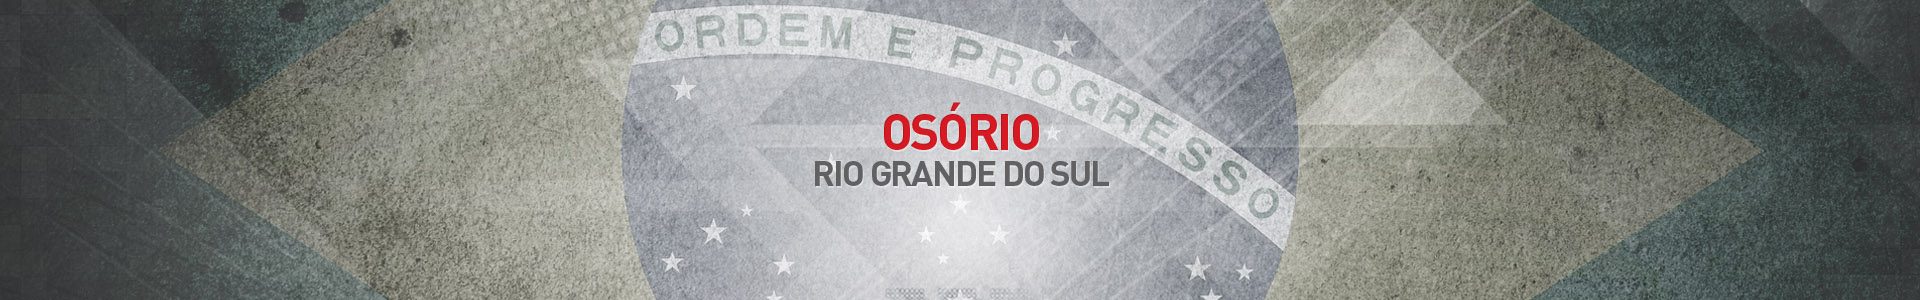 Topo-Cidades-Osorio-SBA